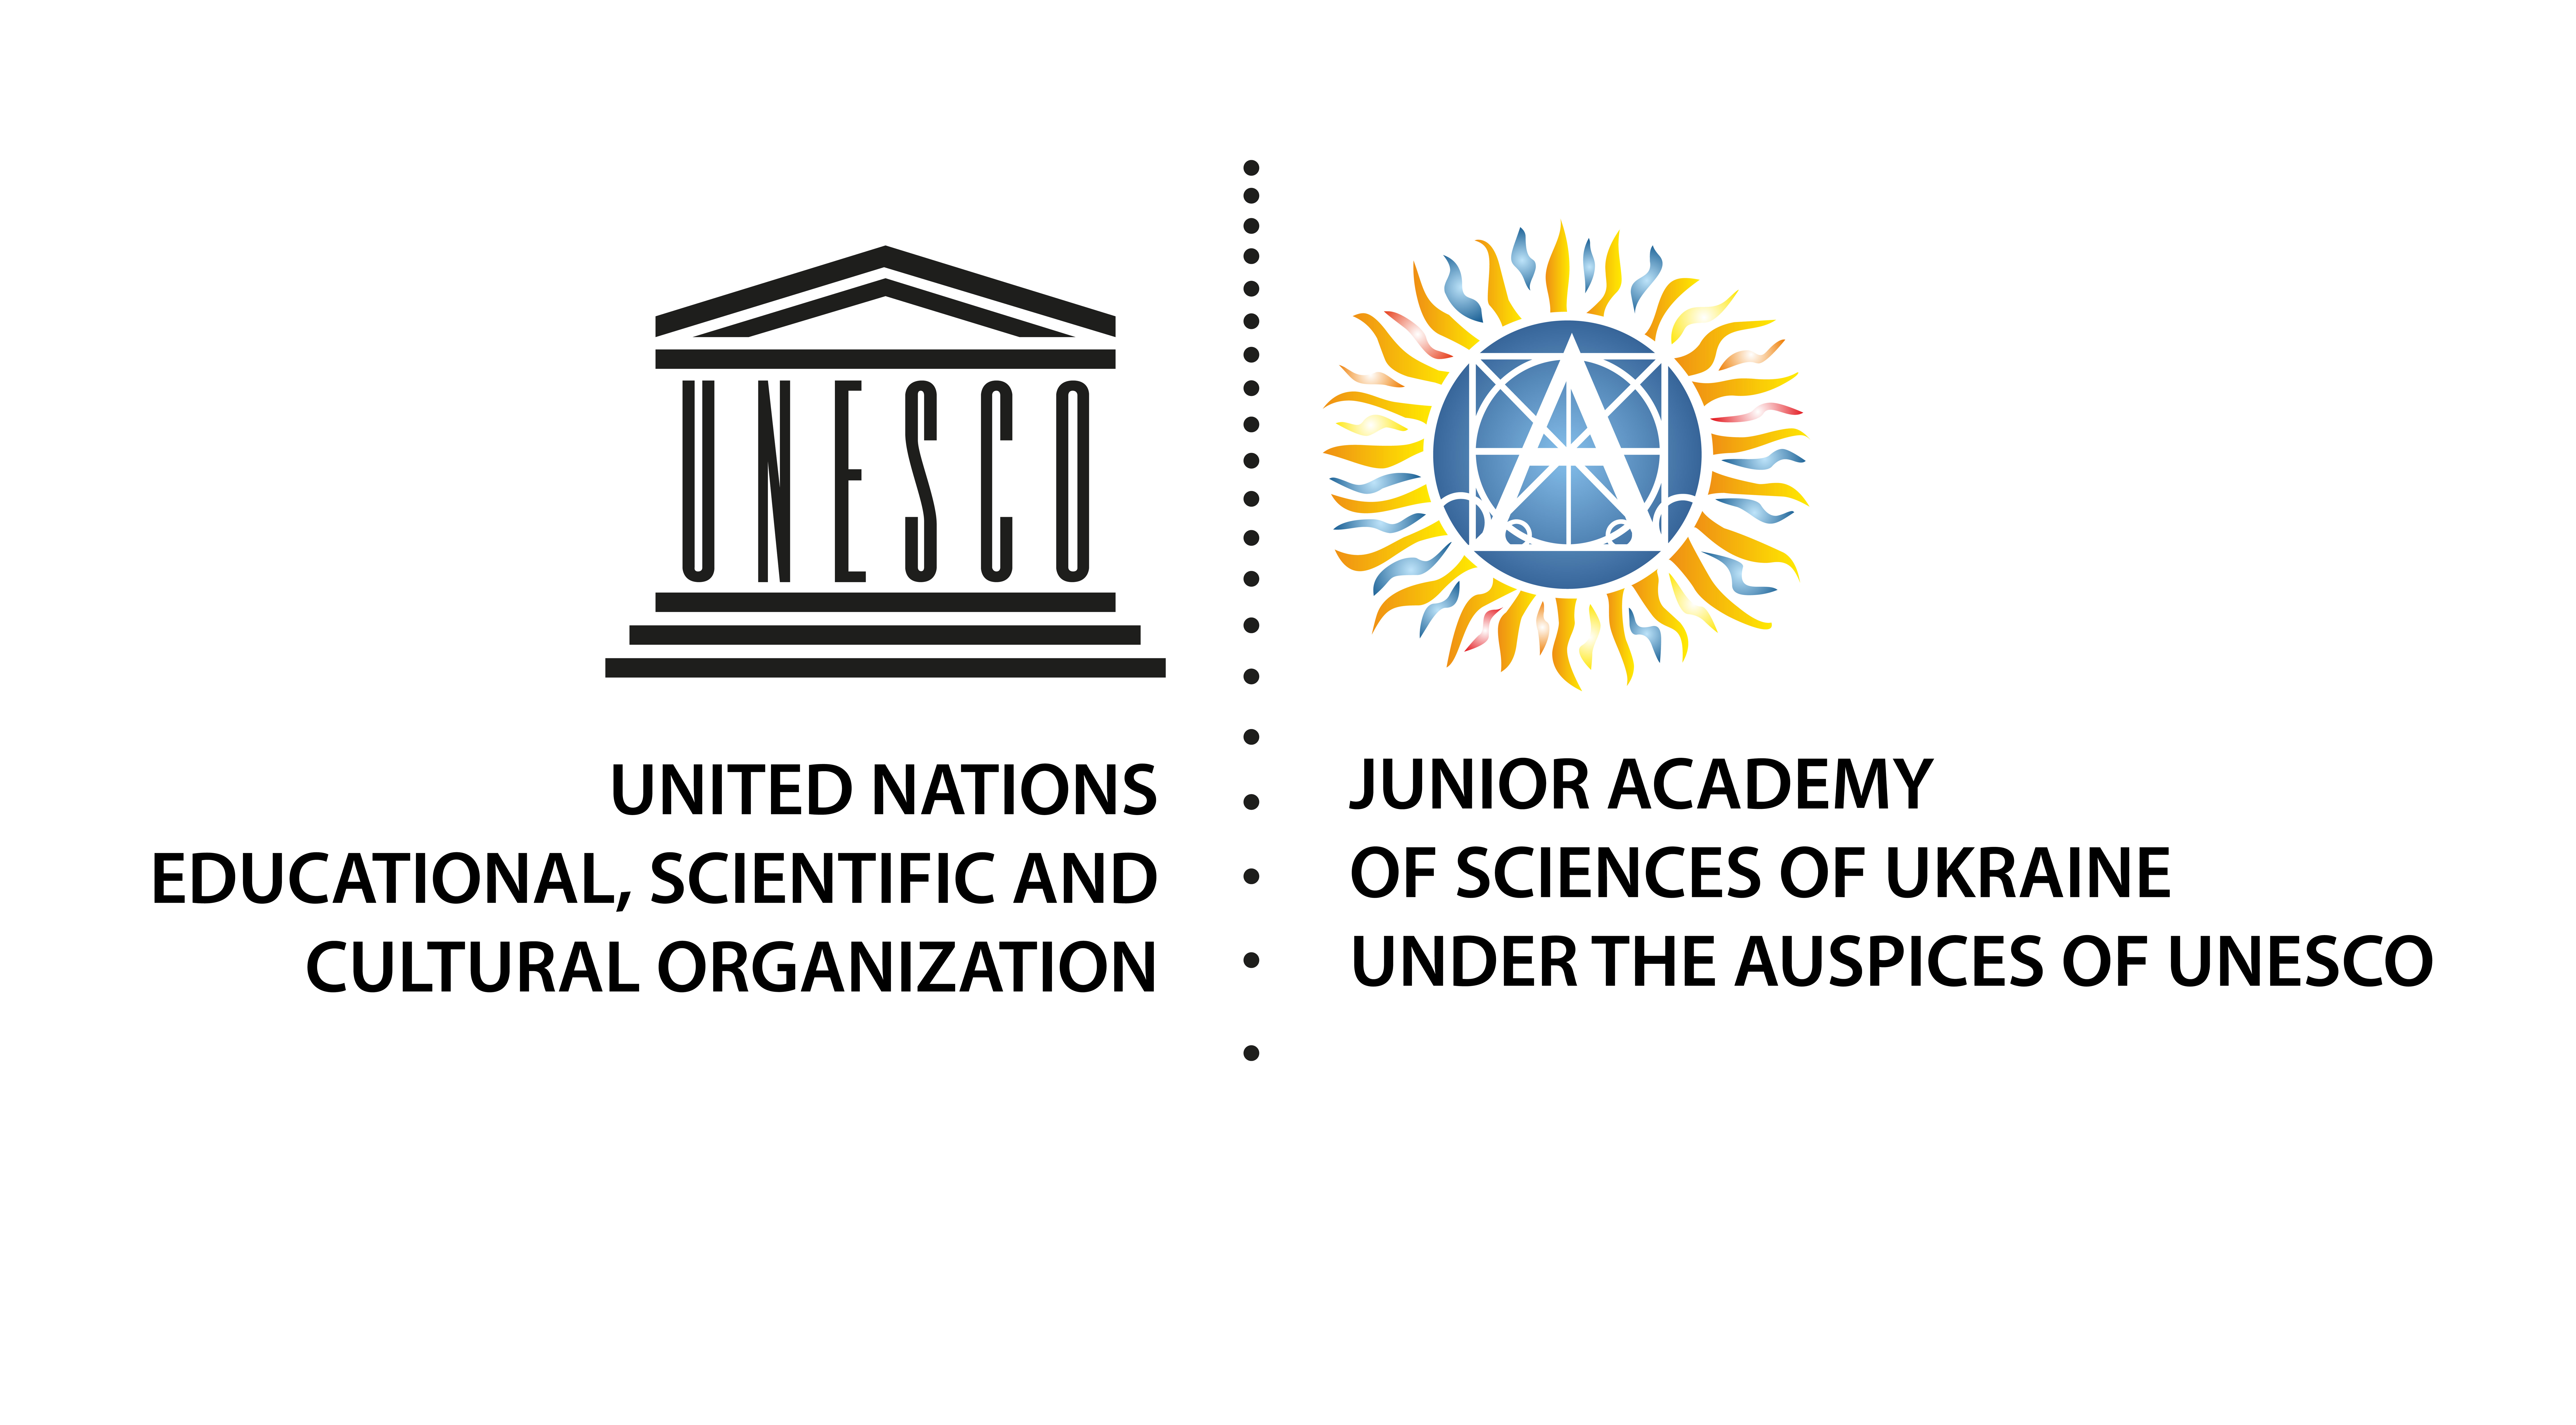 Red Nacional de Actividades Juveniles en Ciencia y Tecnologia